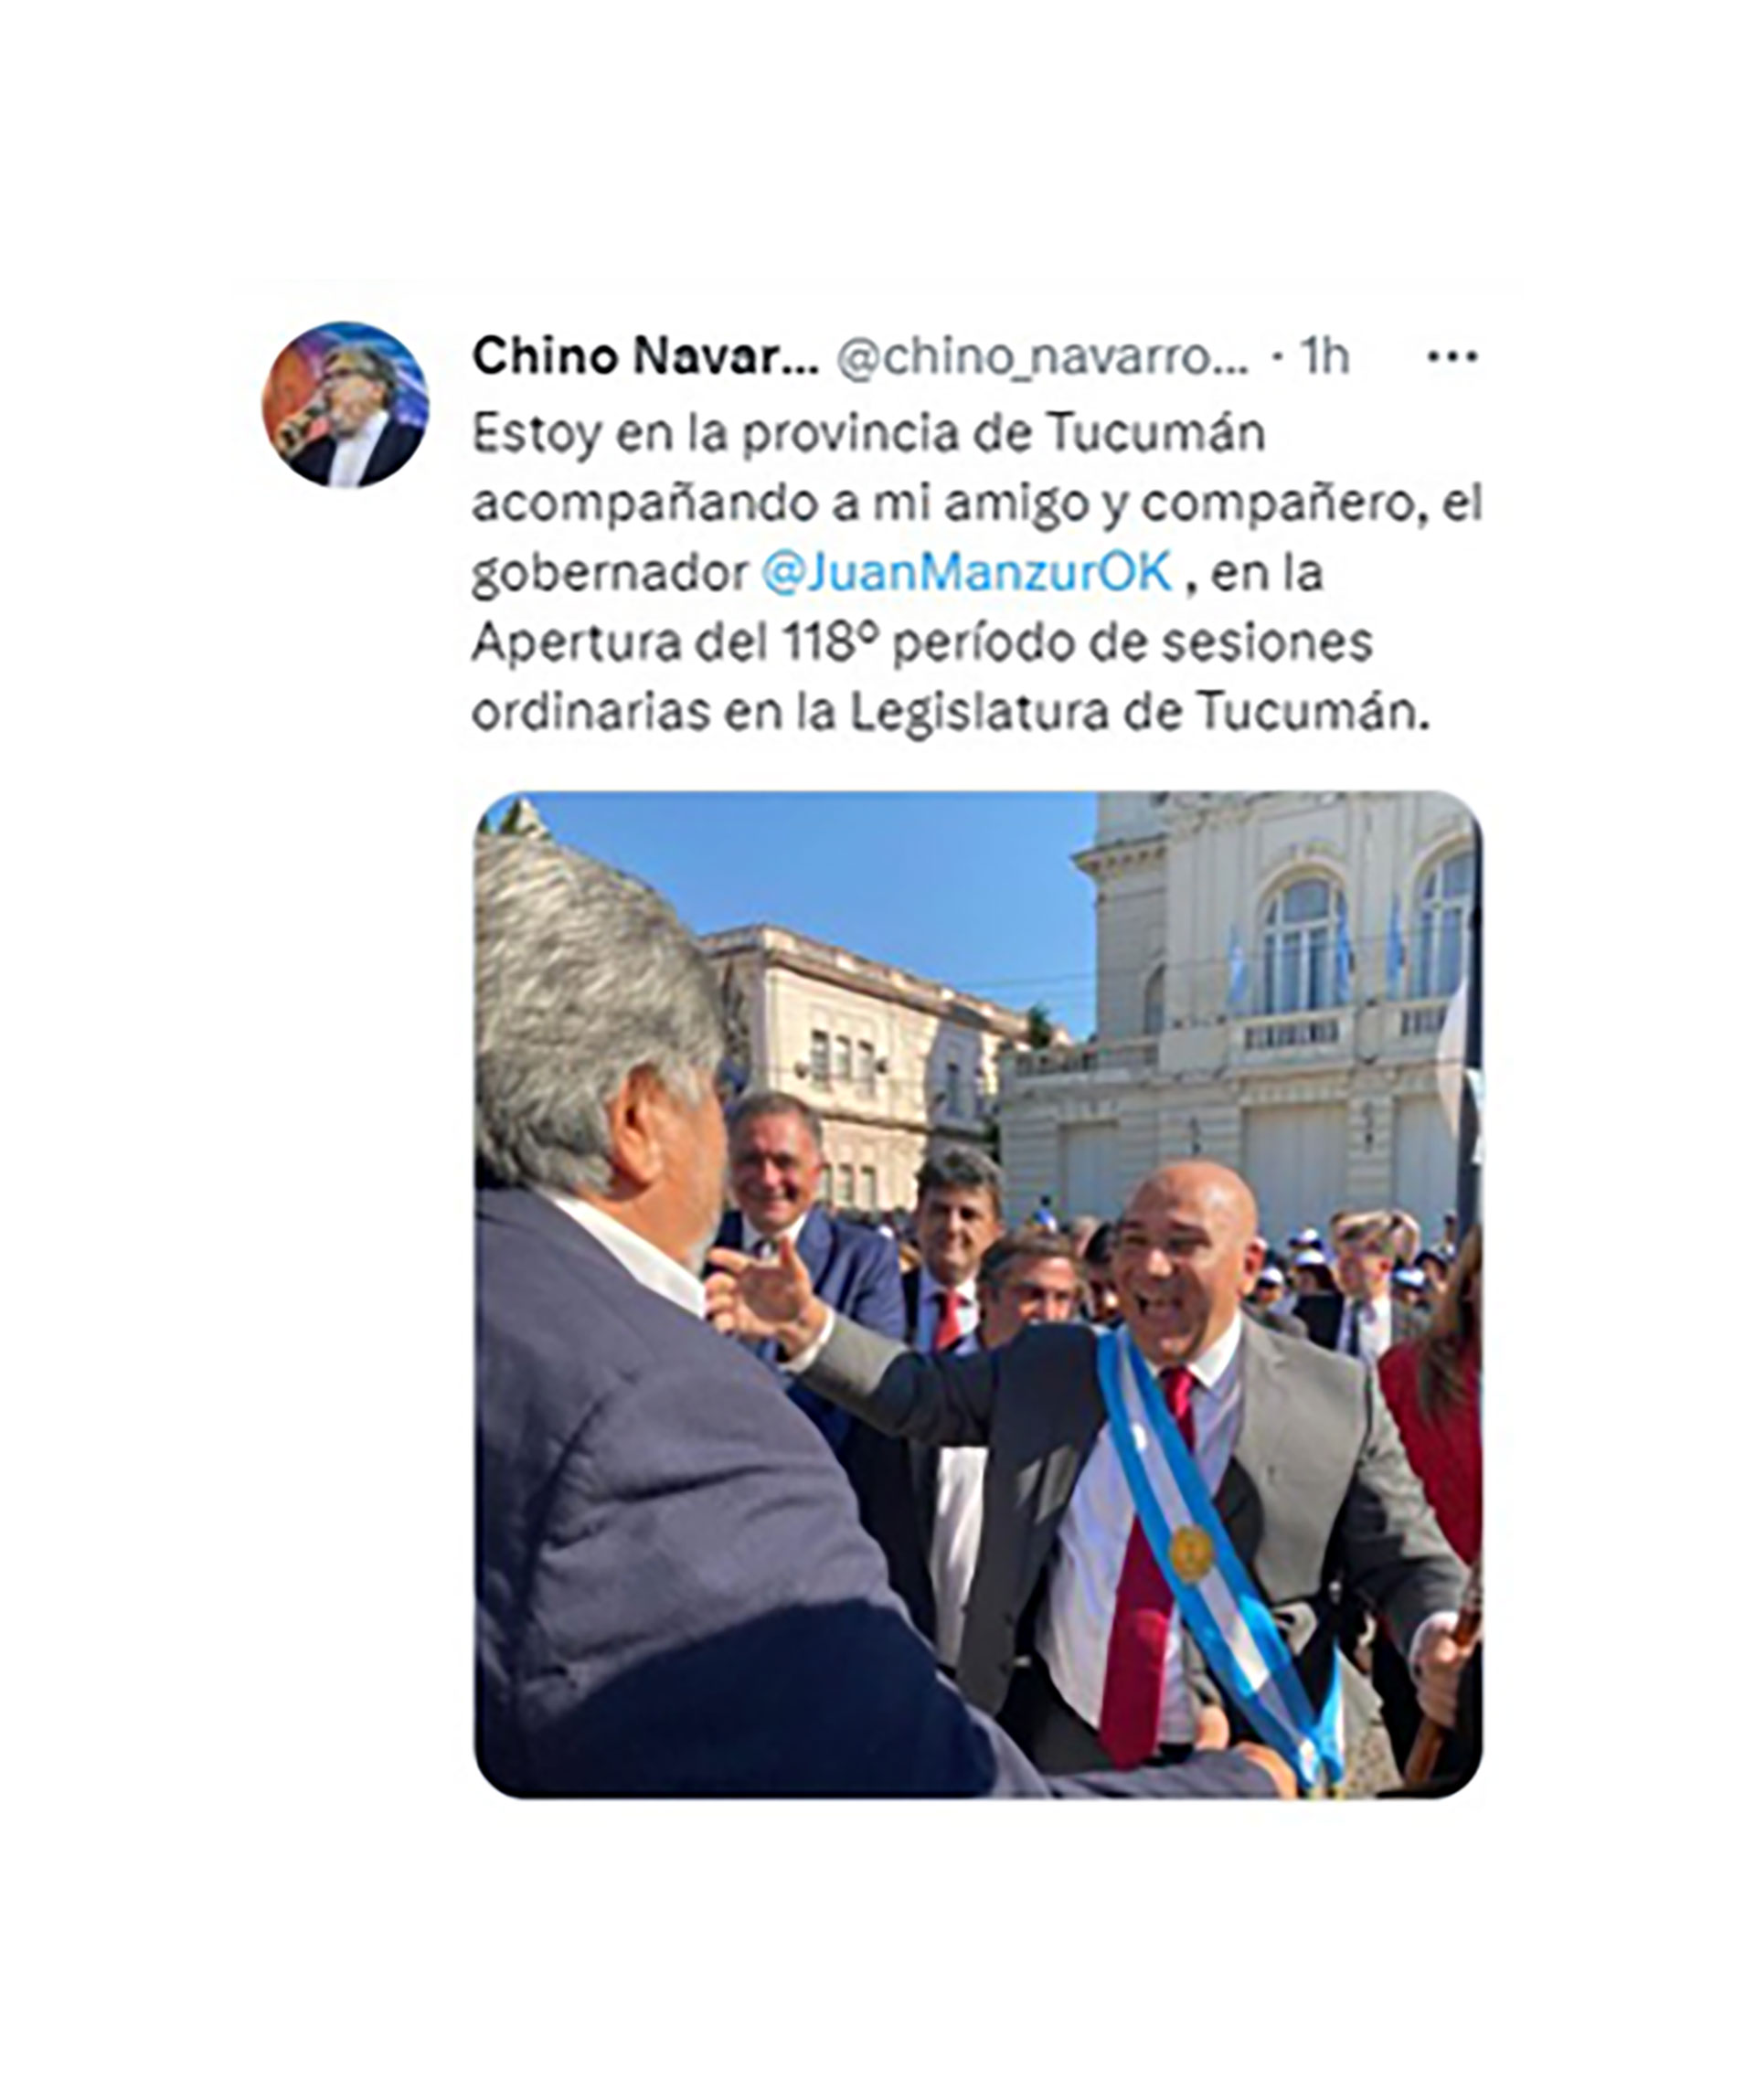 La foto de "Chino" Navarro con Manzur, en Tucumán, lejos del Congreso para el discurso de apertura de sesiones 